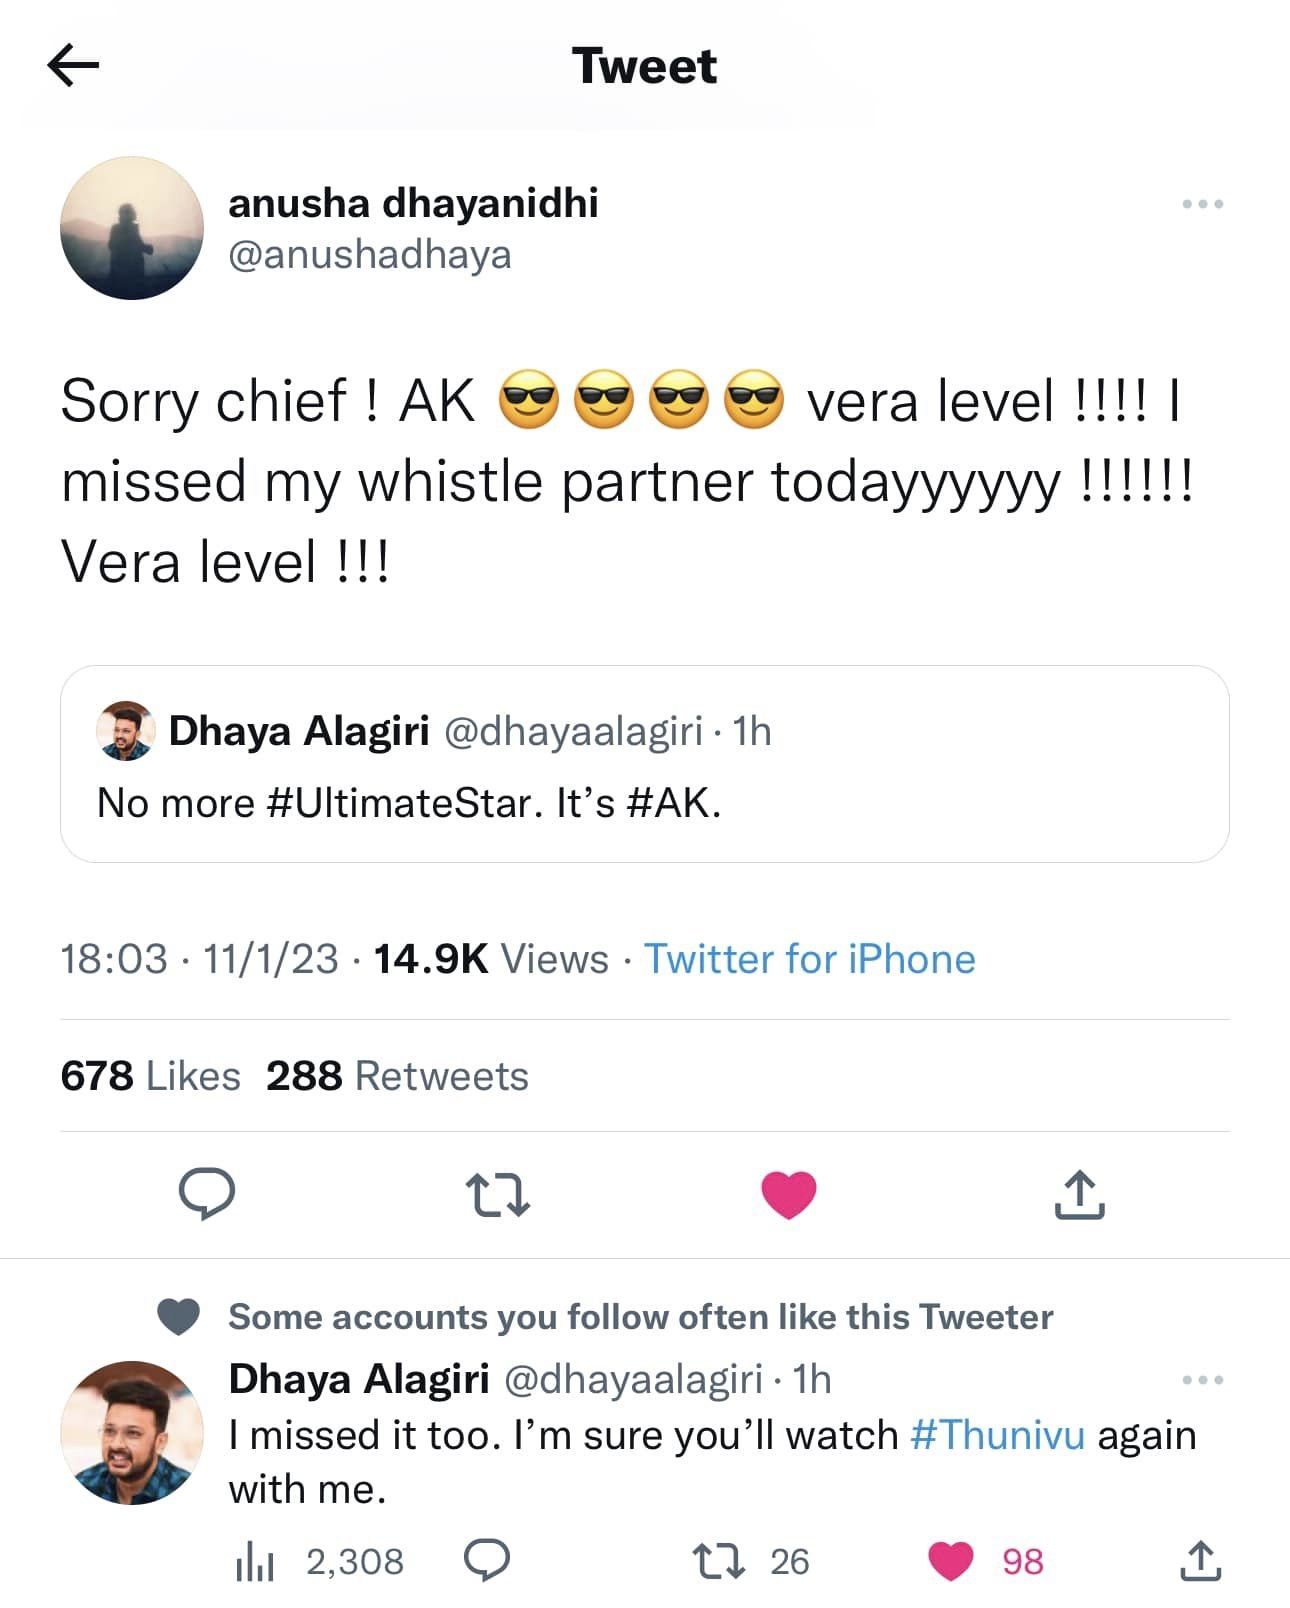 Dhayanidhi Alagiri Anusha tweet about Thunivu Movie